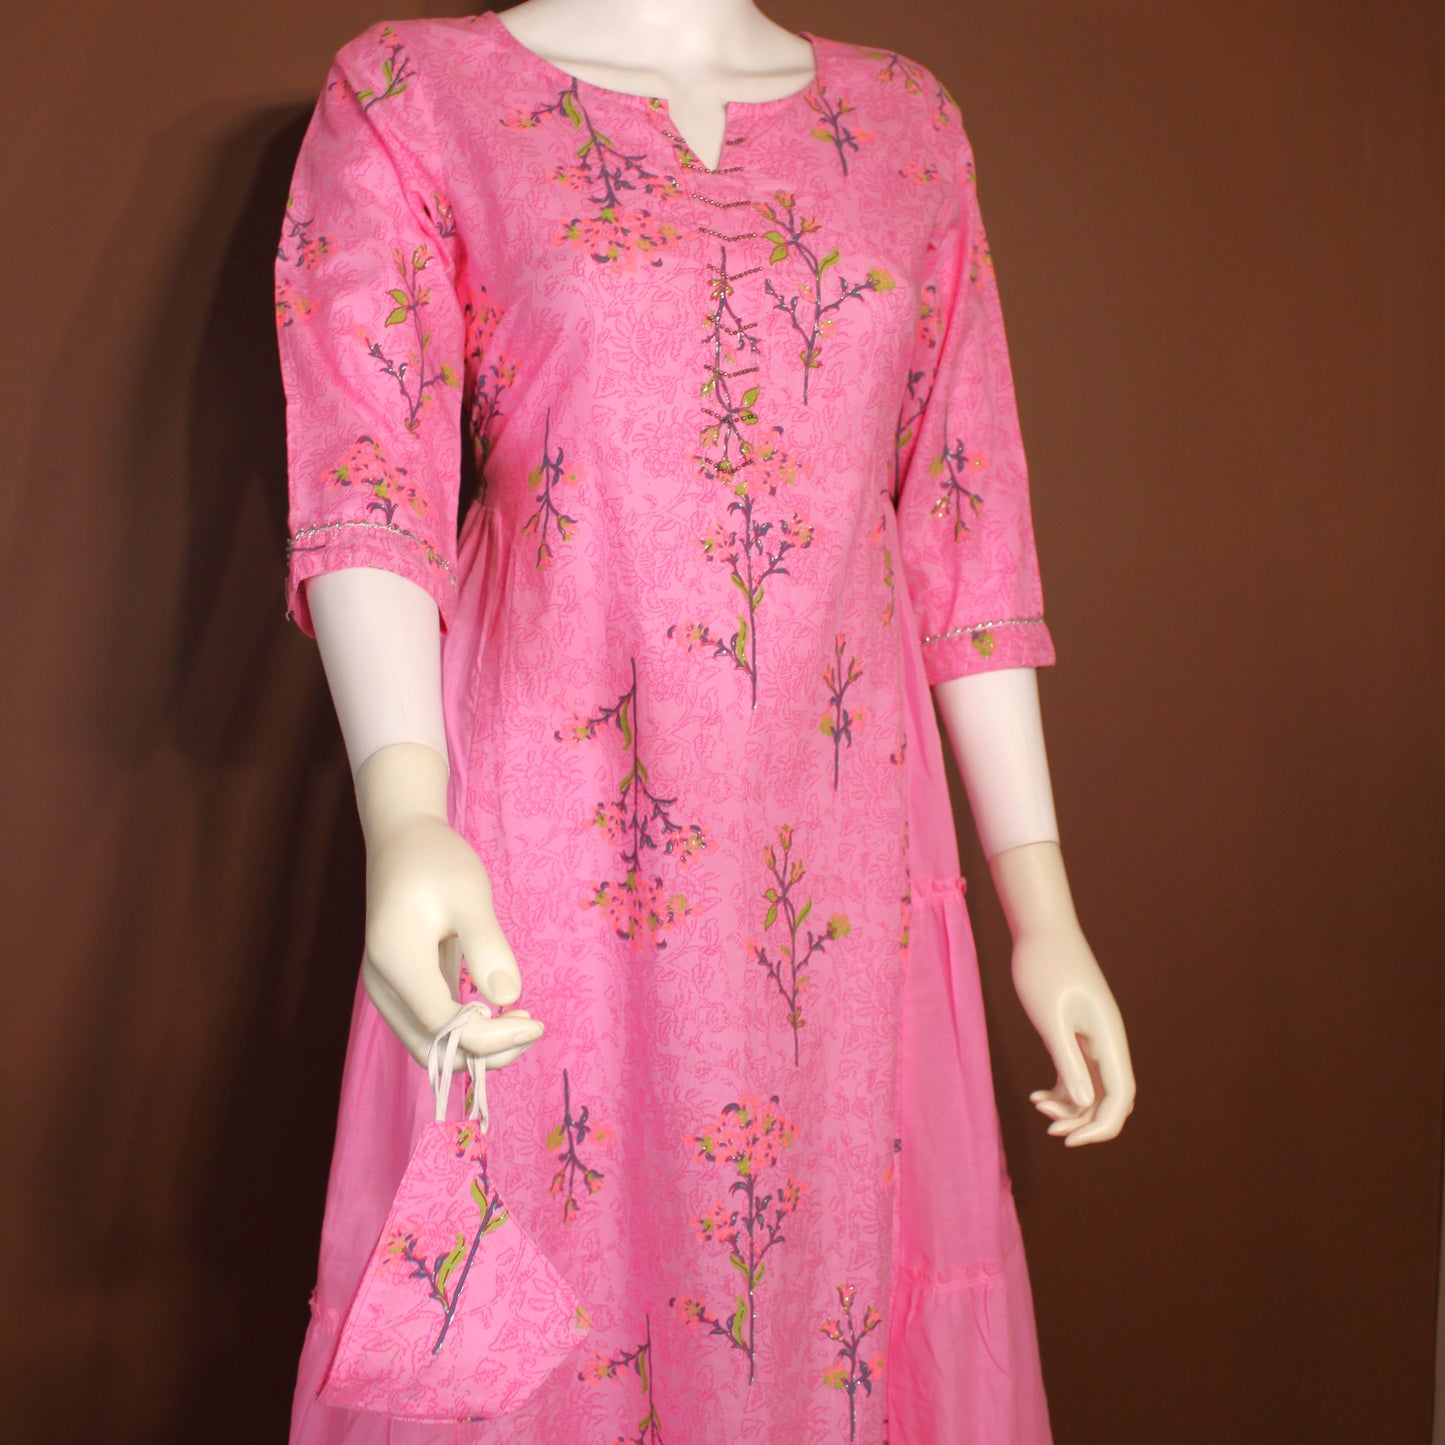 Maharani's Soft Cotton Long Dress - Pink (M)